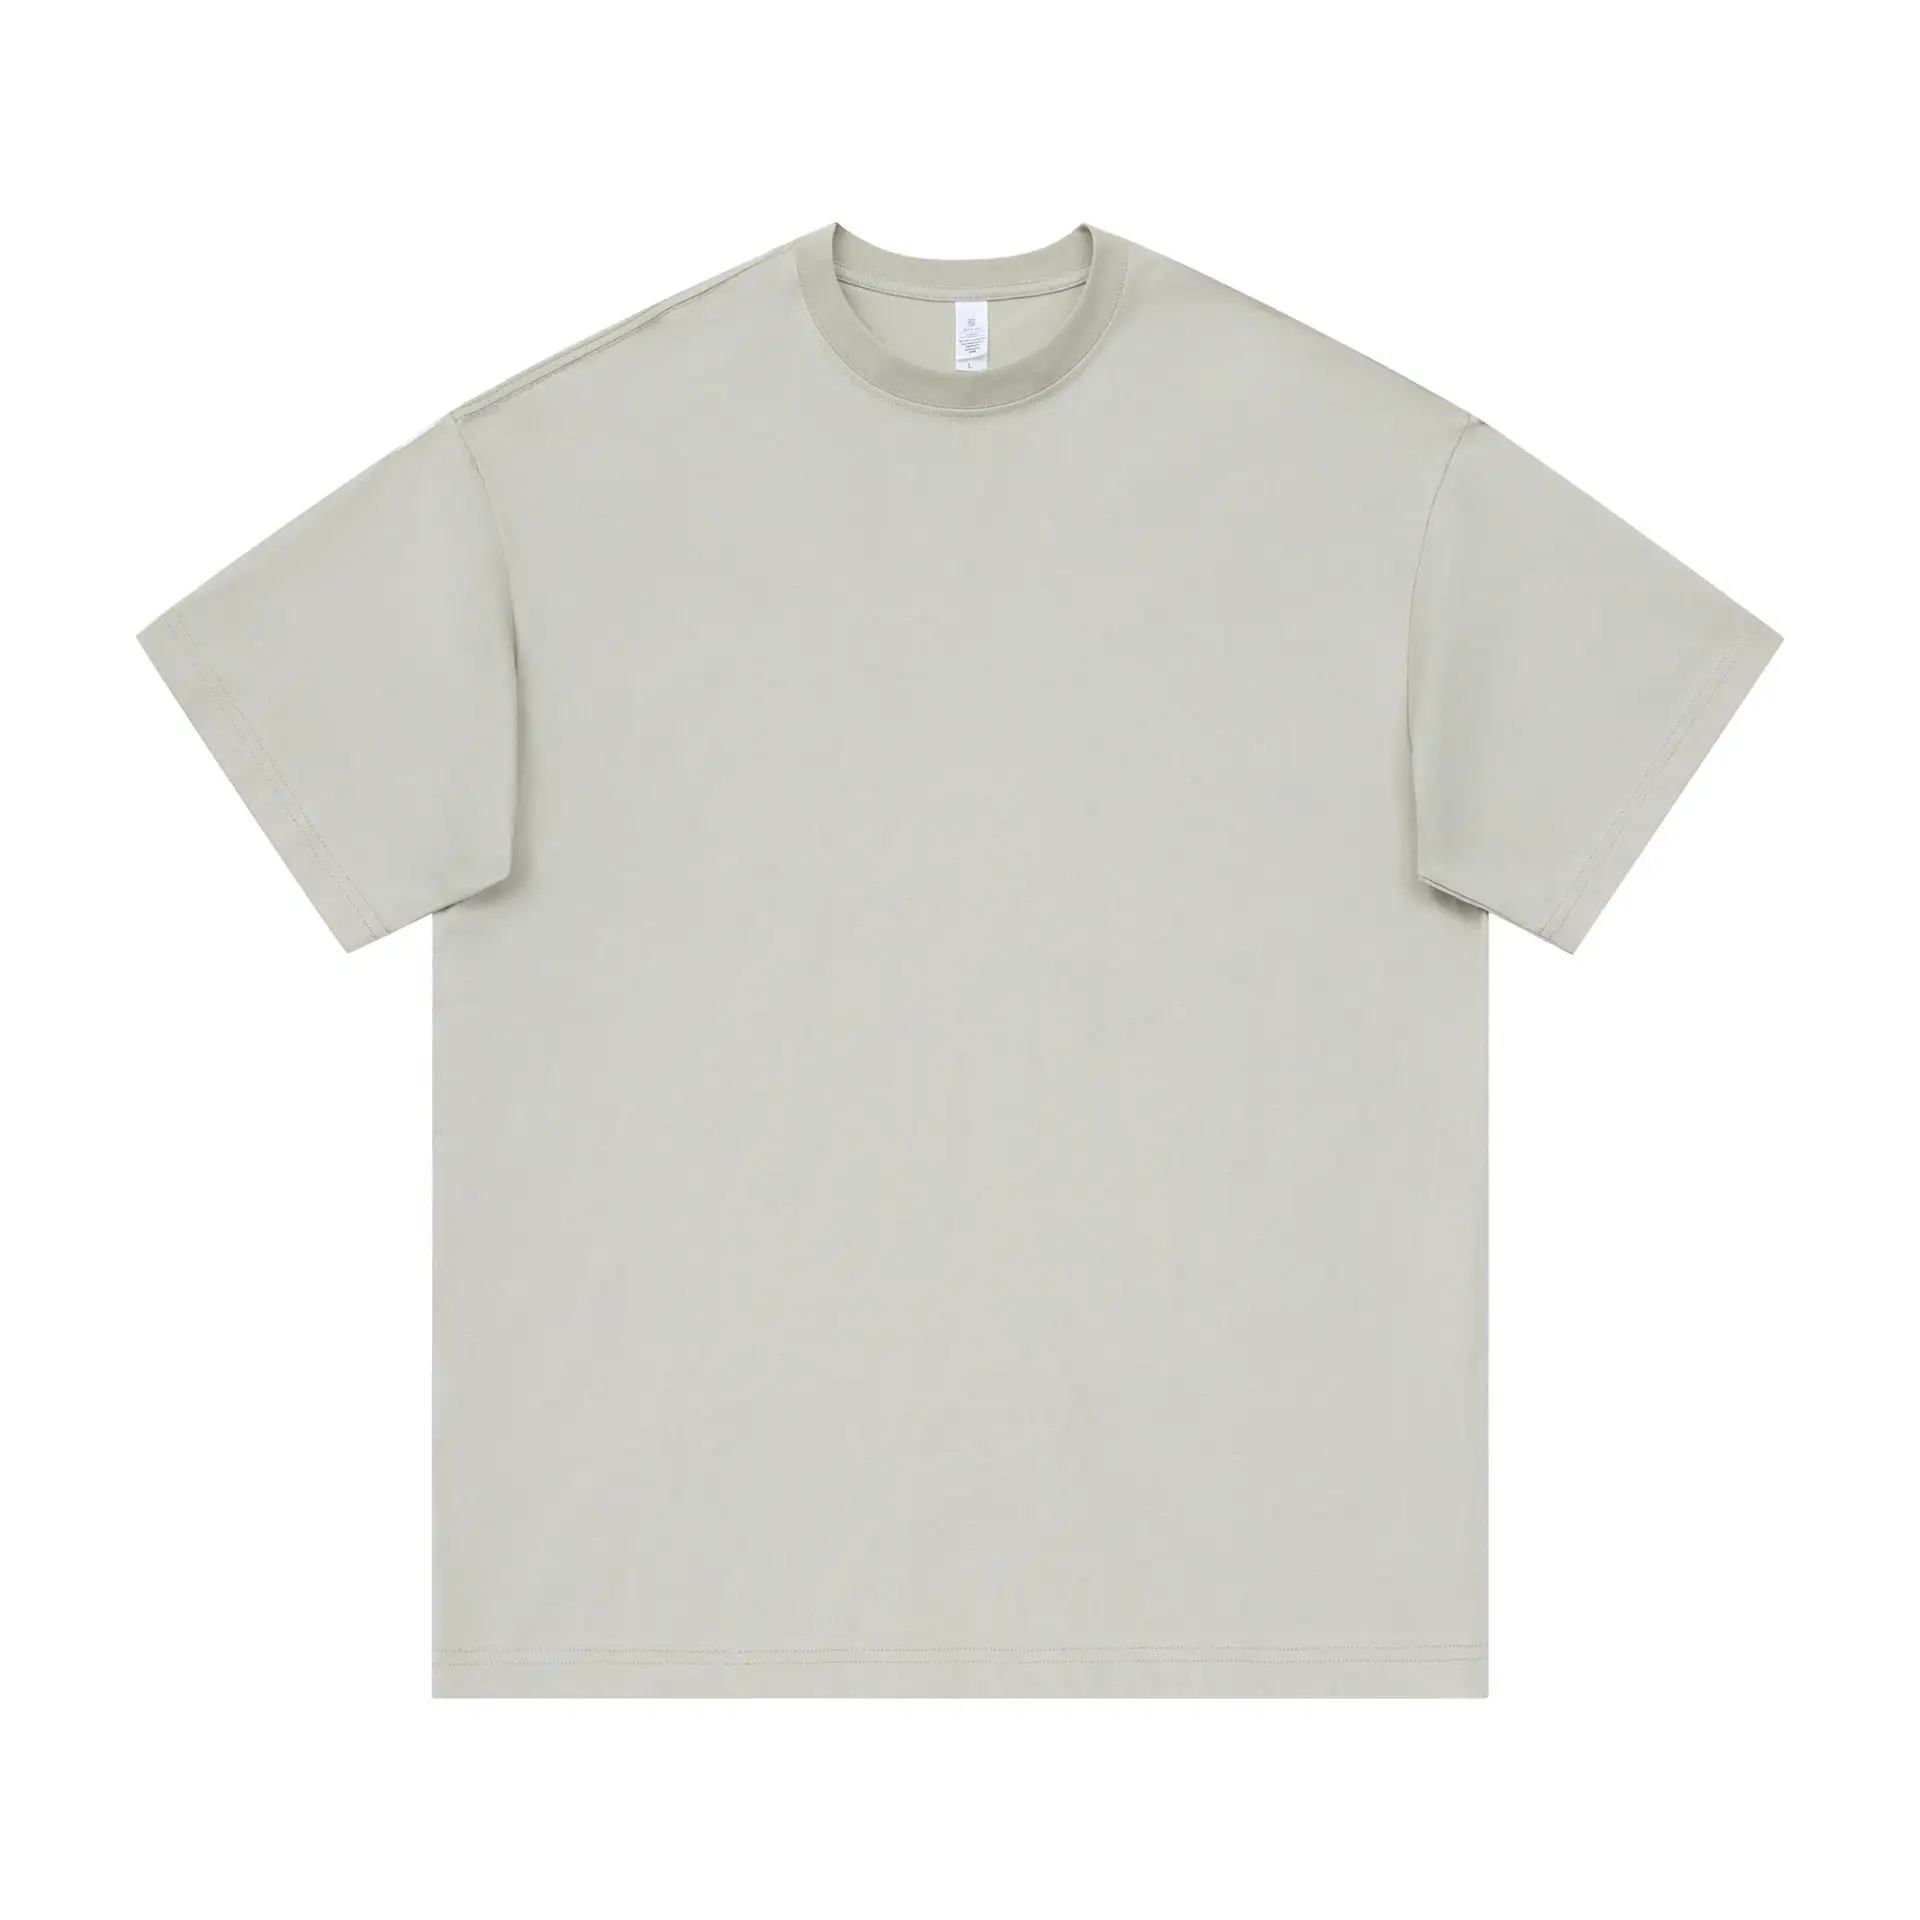 Atacado personalizado em branco T-shirt oversized T-shirt dos homens impresso 100% algodão oversized vintage T-shirt 240g roupas masculinas